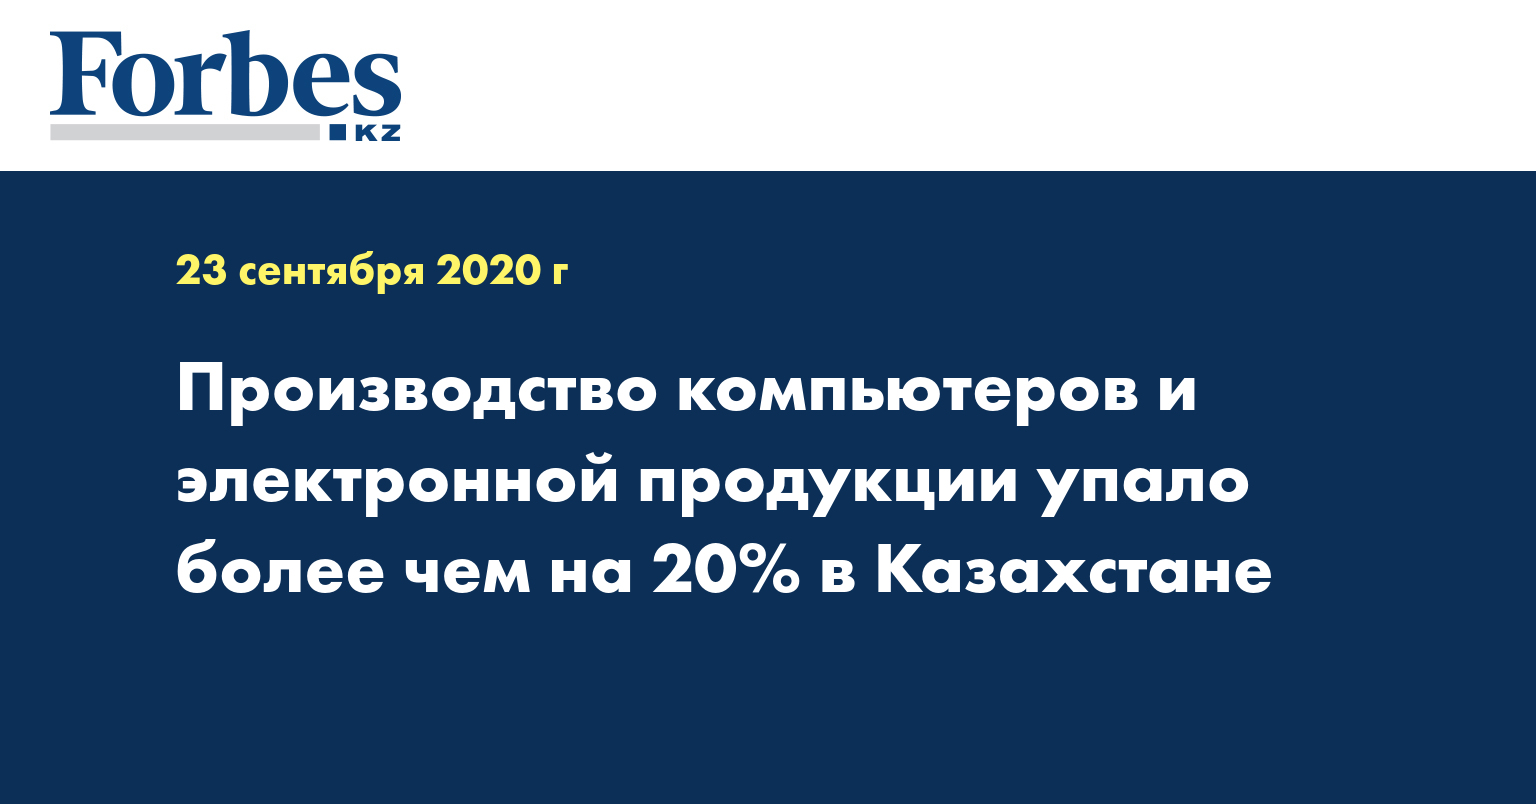 Производство компьютеров и электронной продукции упало более чем на 20% в Казахстане